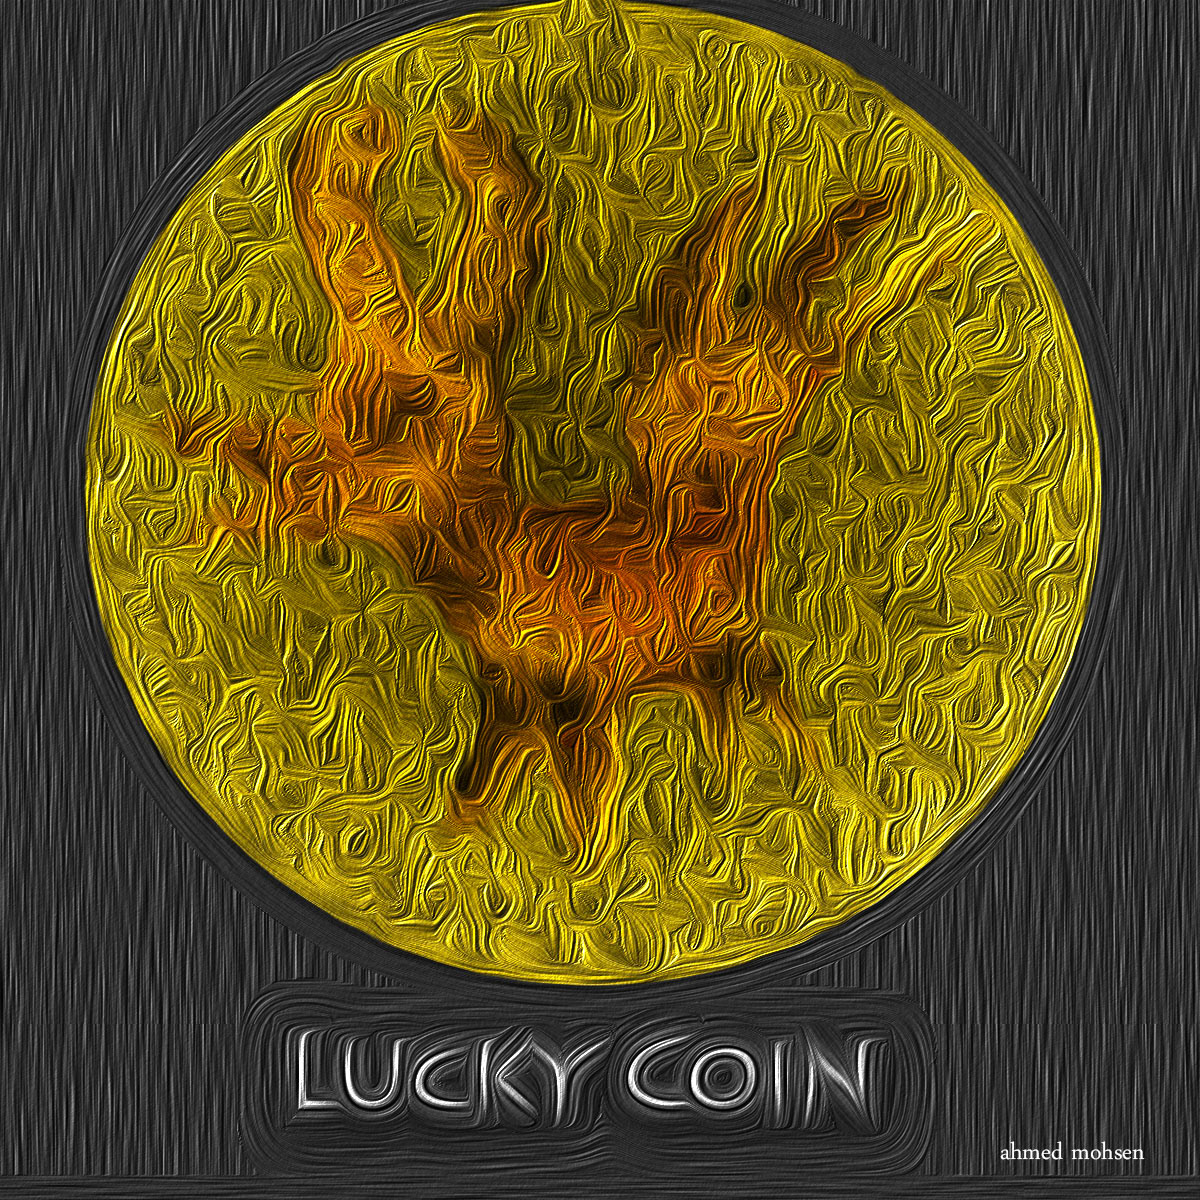 coin lucky coin lucky fantasy